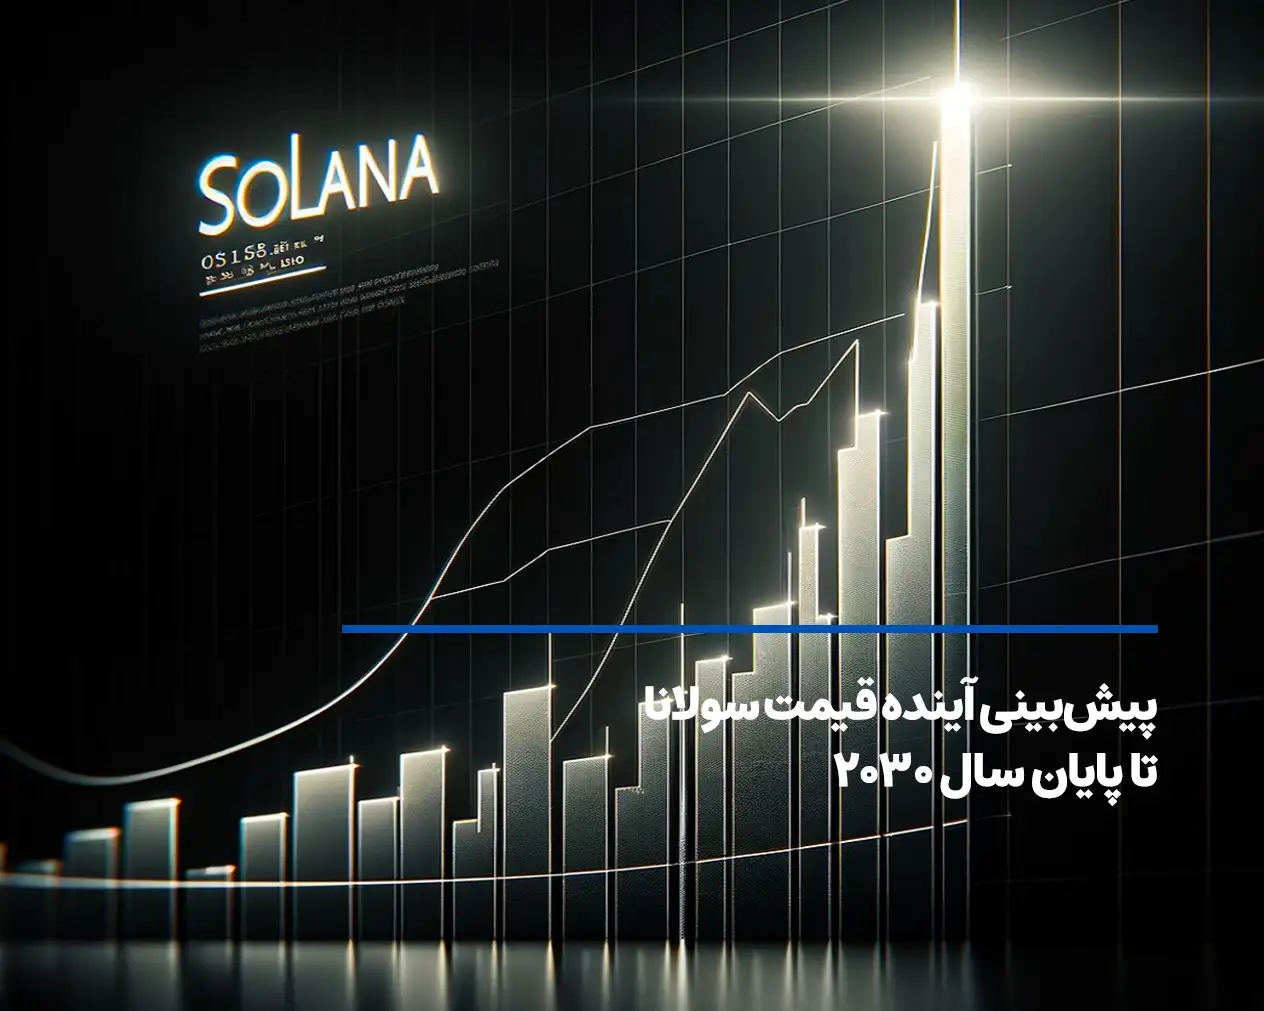 آینده ارزدیجیتال سولانا (Solana)-پیش بینی قیمت تا 2030